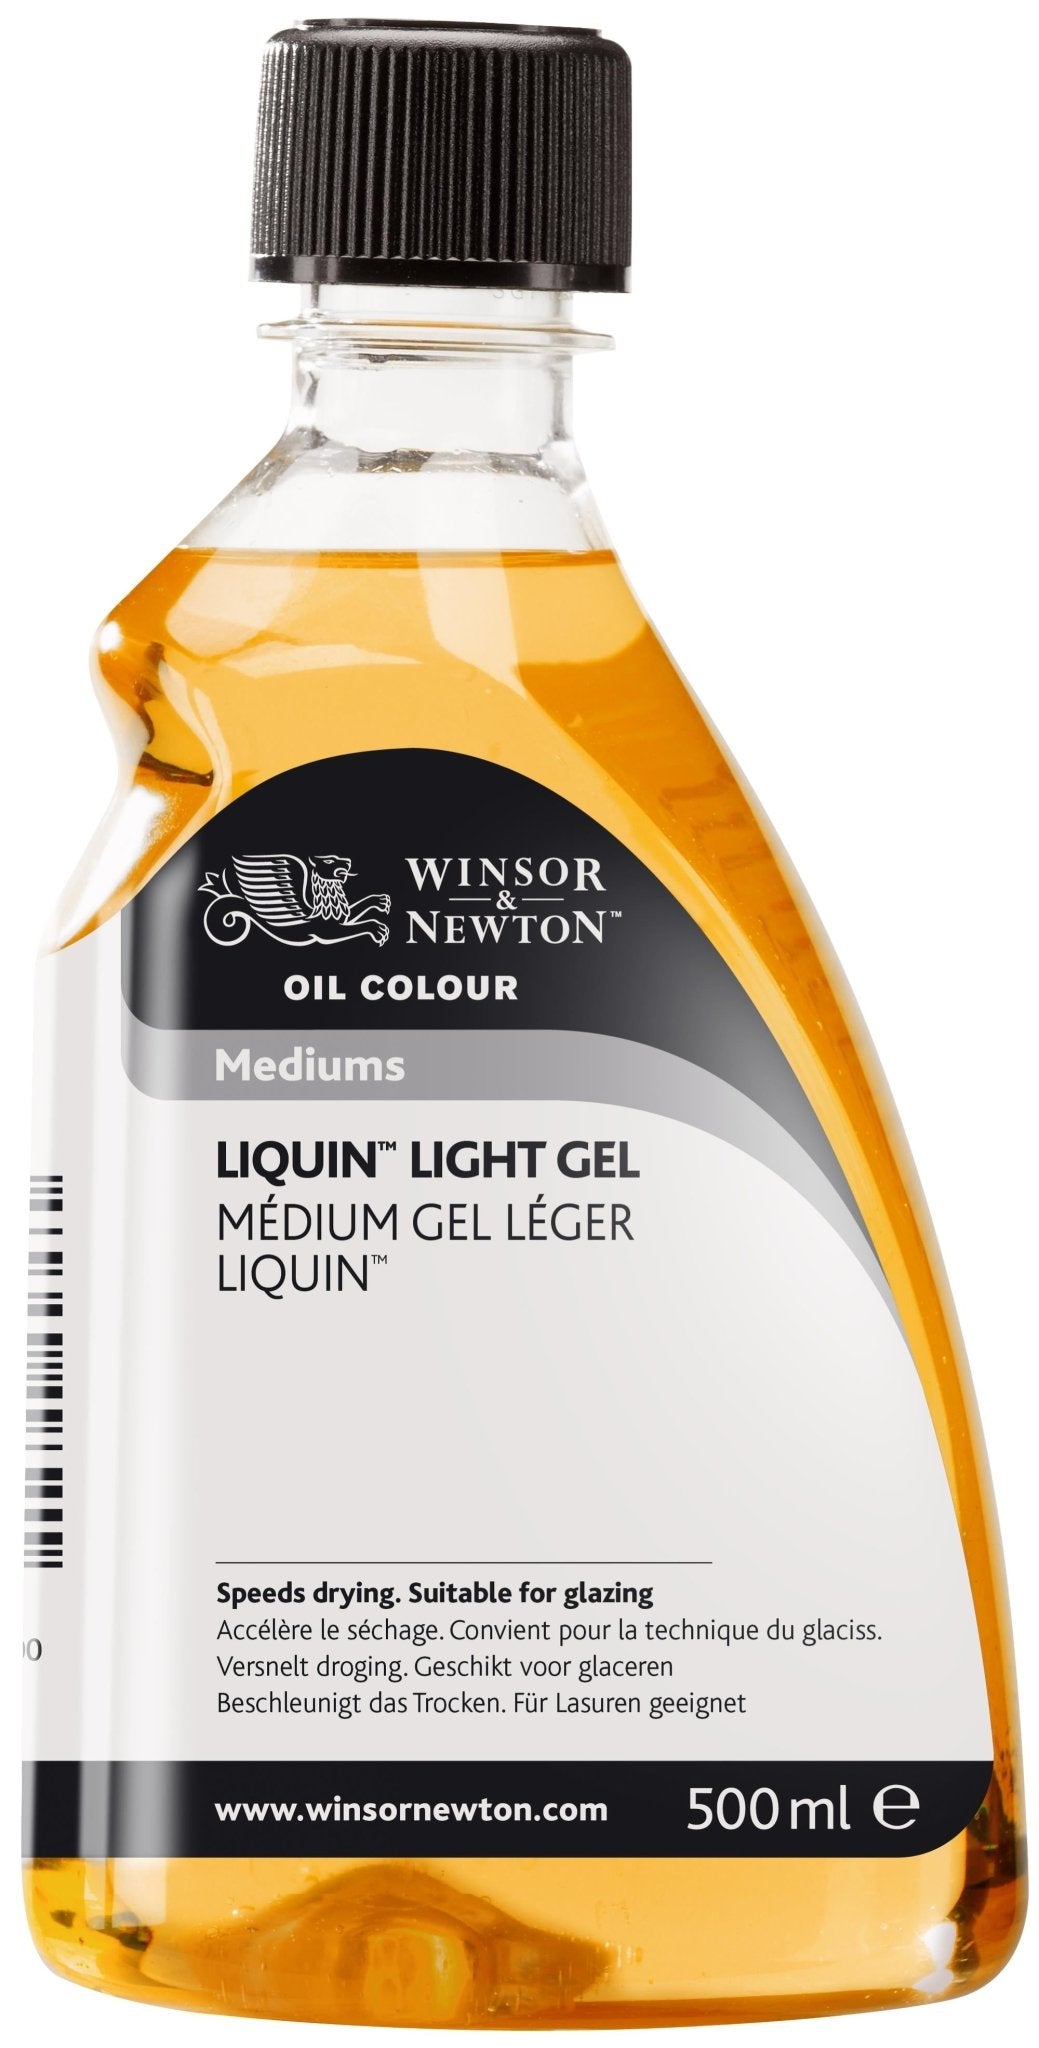 W & N Liquin Light Gel 500ml - theartshop.com.au